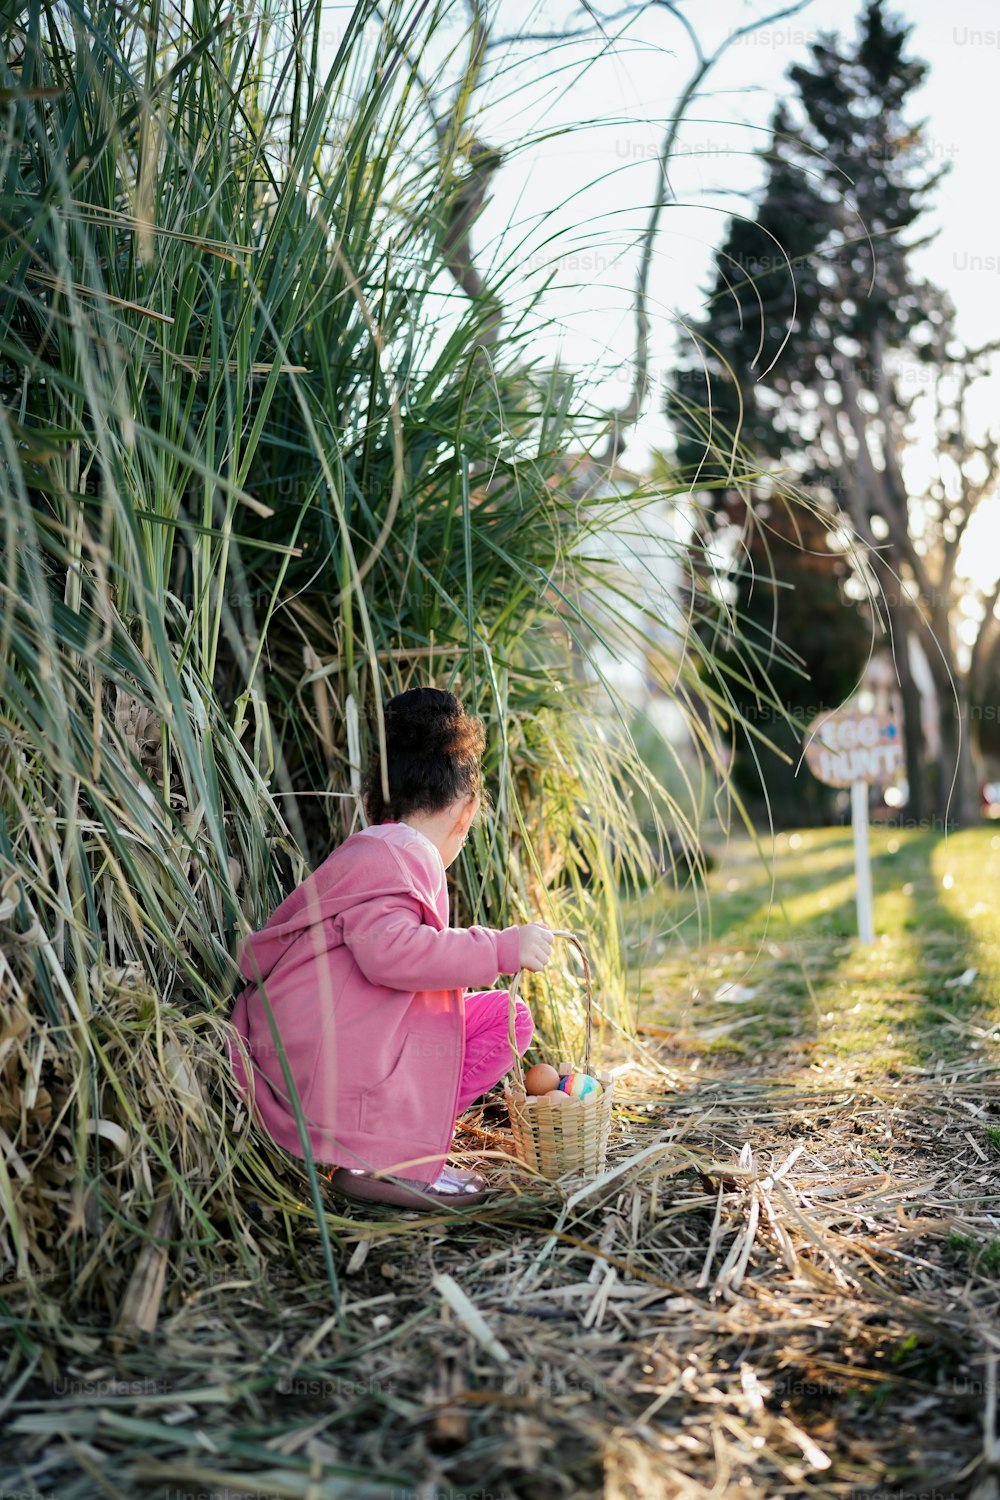 풀밭에 앉아 분홍색 재킷을 입은 어린 소녀